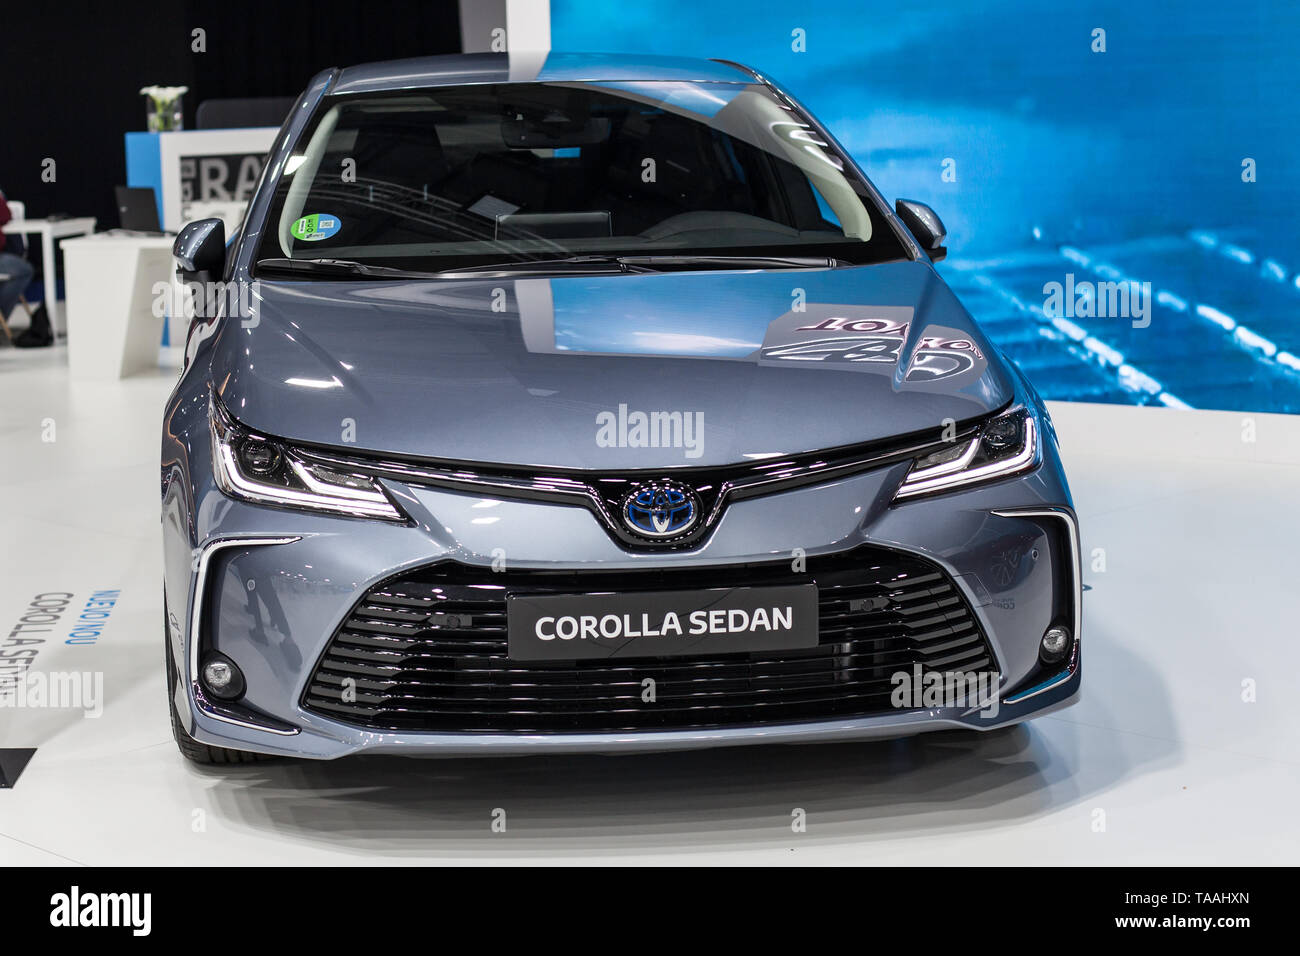 Barcelone, Espagne - 19 mai 2019 : Toyota Corolla Berline présentée à Barcelone de l'Automobile 2019 à Barcelone, Espagne. Banque D'Images